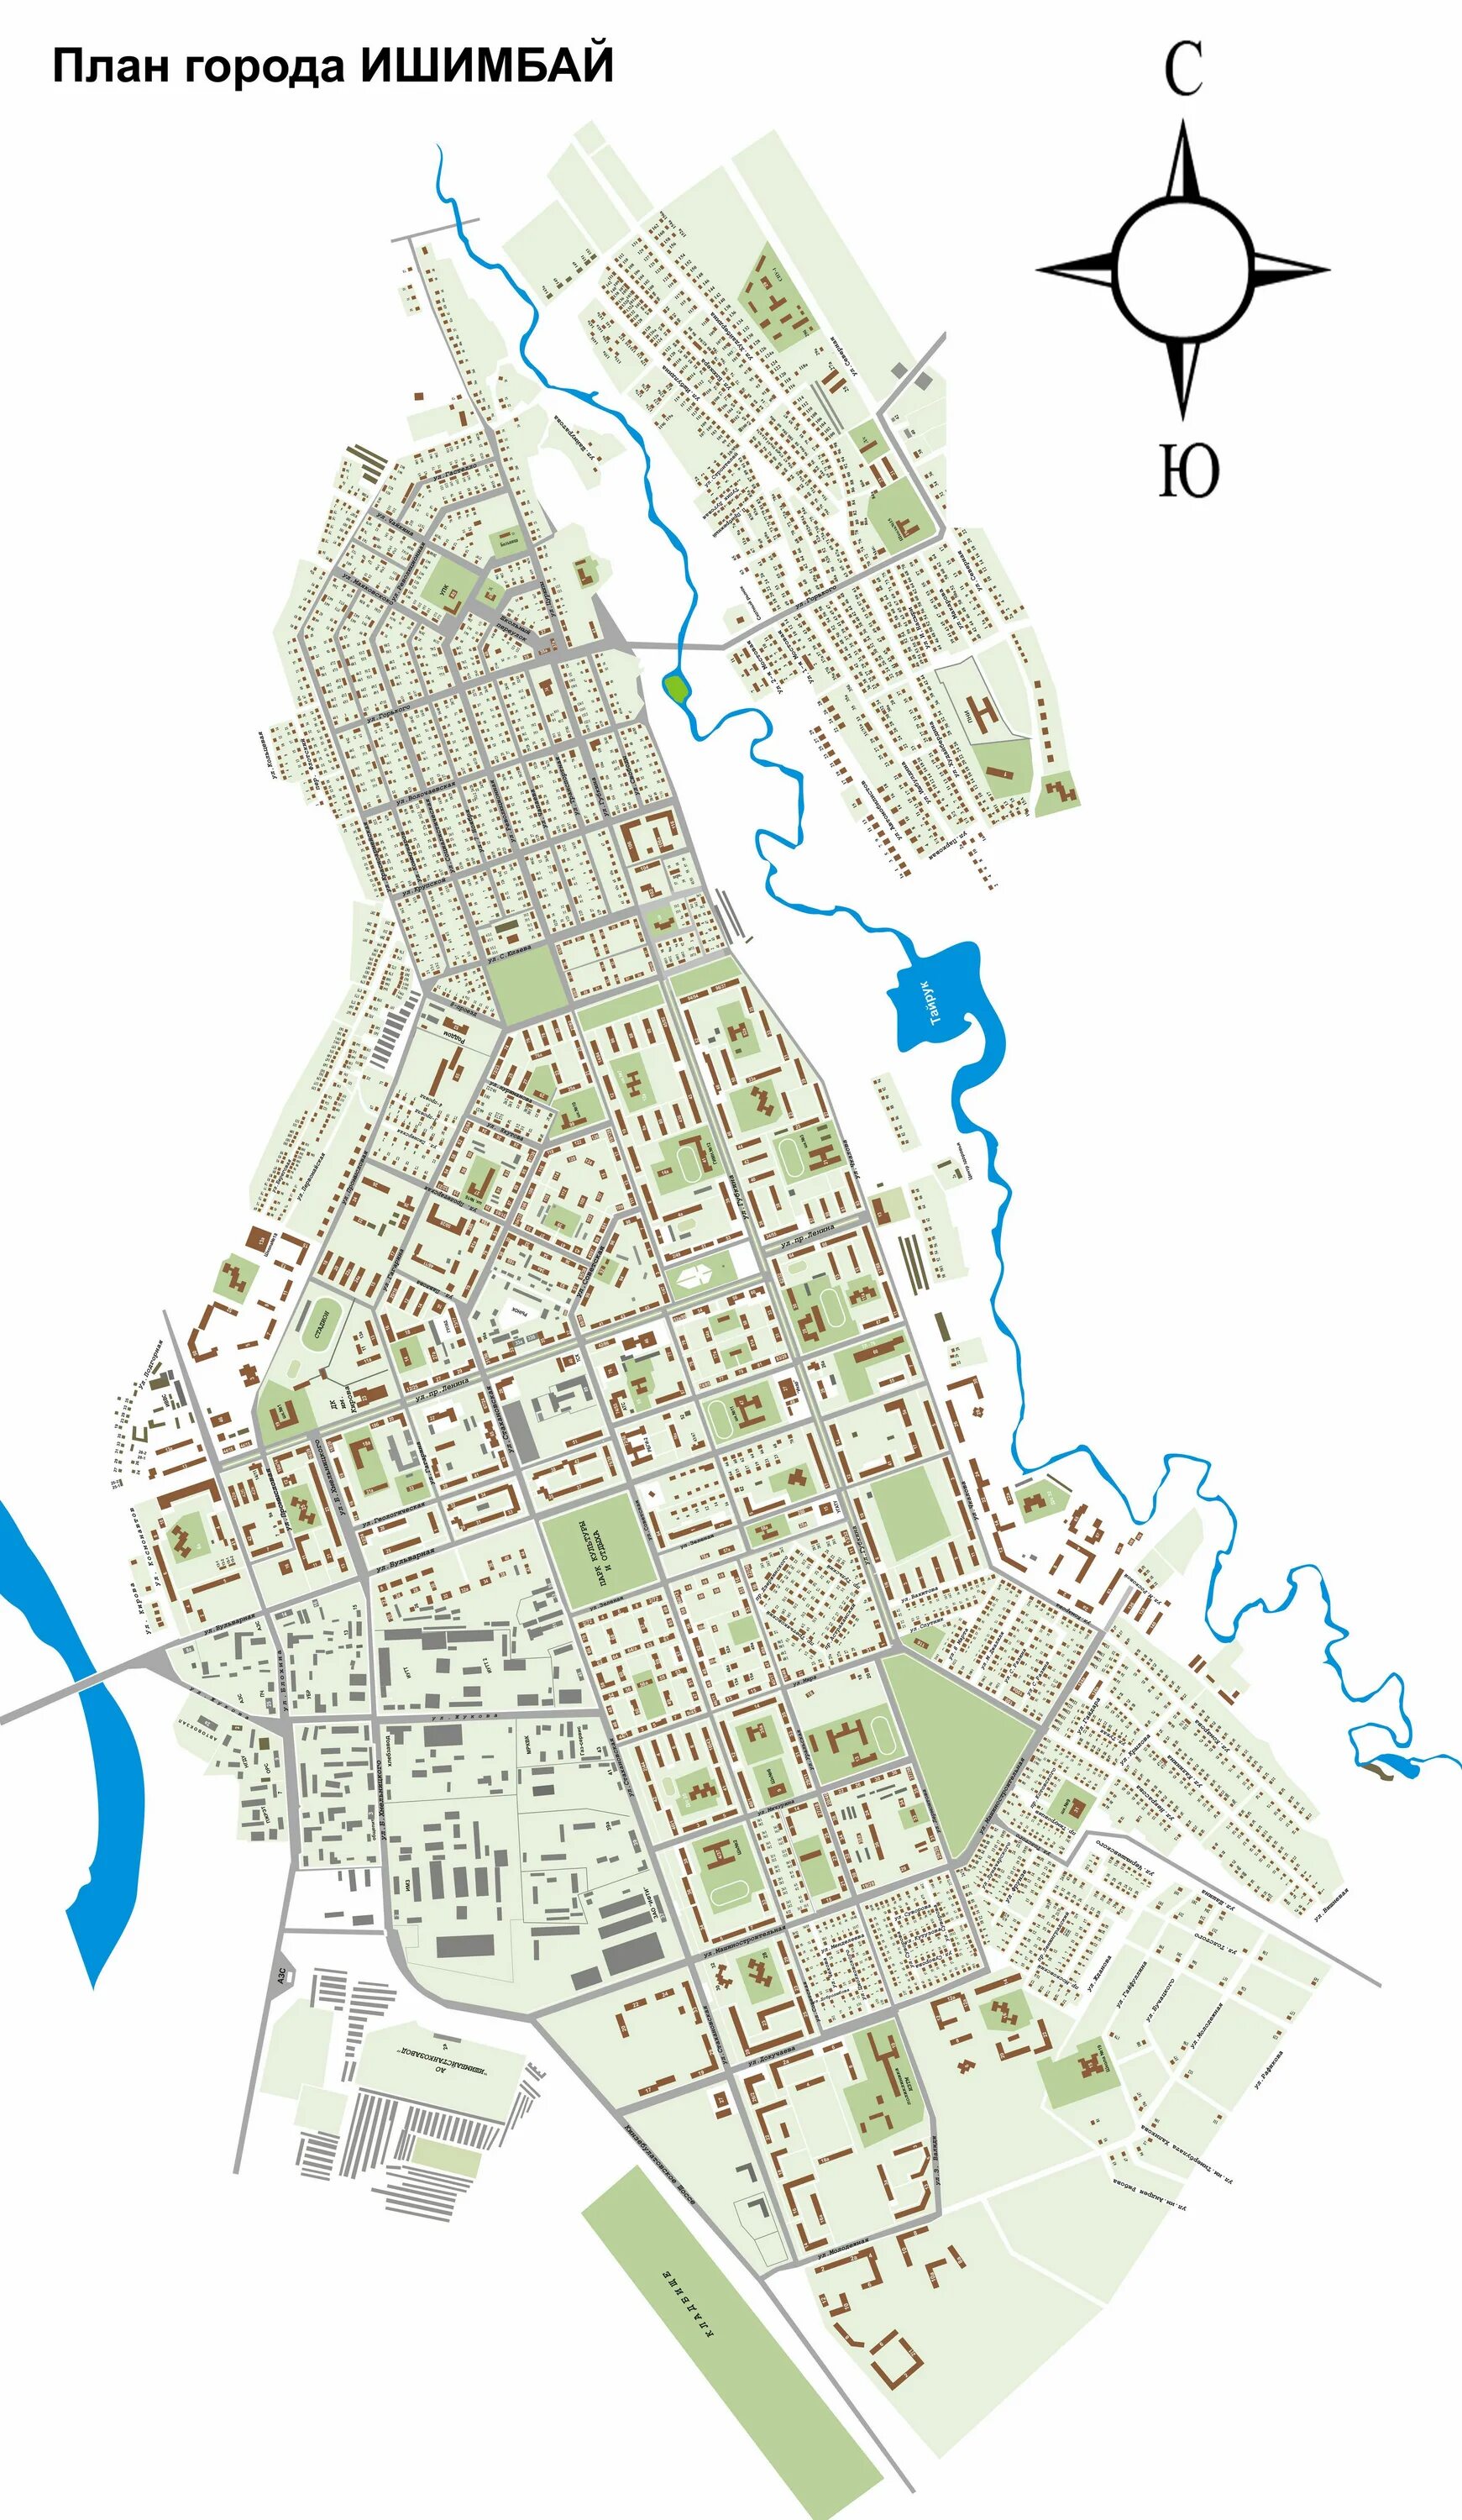 Где город ишимбай. Г Ишимбай на карте. Ишимбай город на карте. Карта города Ишимбай с улицами. Ишимбай на карте Башкирии.